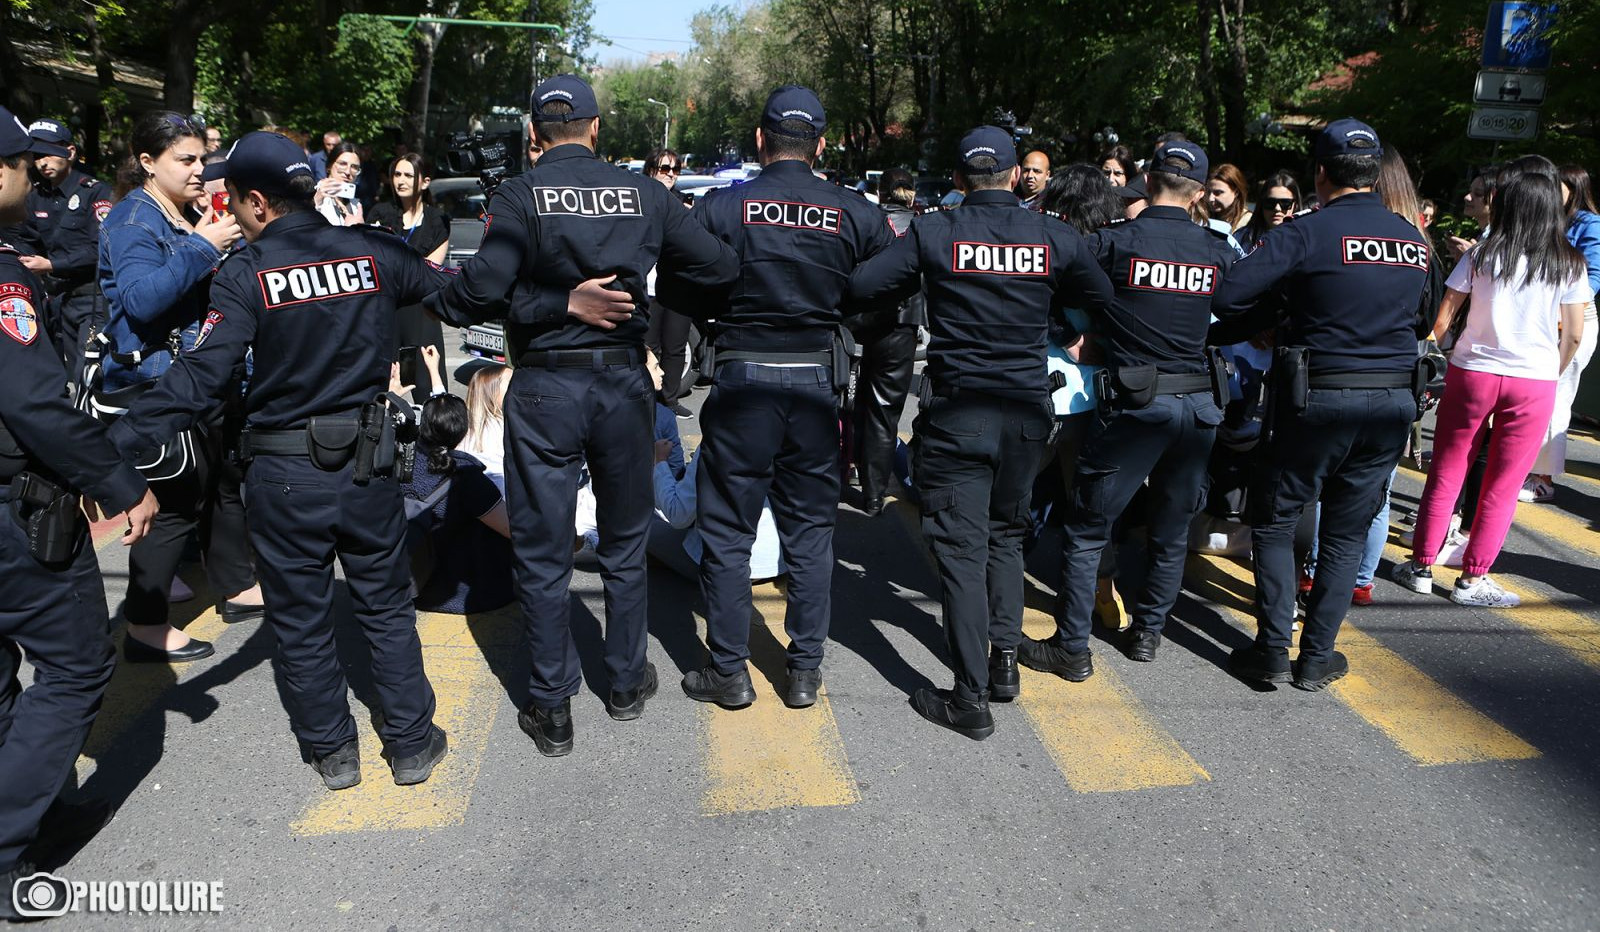 Երևանում ոստիկանի օրինական պահանջին չենթարկվելու հոդվածով բերման է ենթարկվել ակցիաների 74 մասնակից